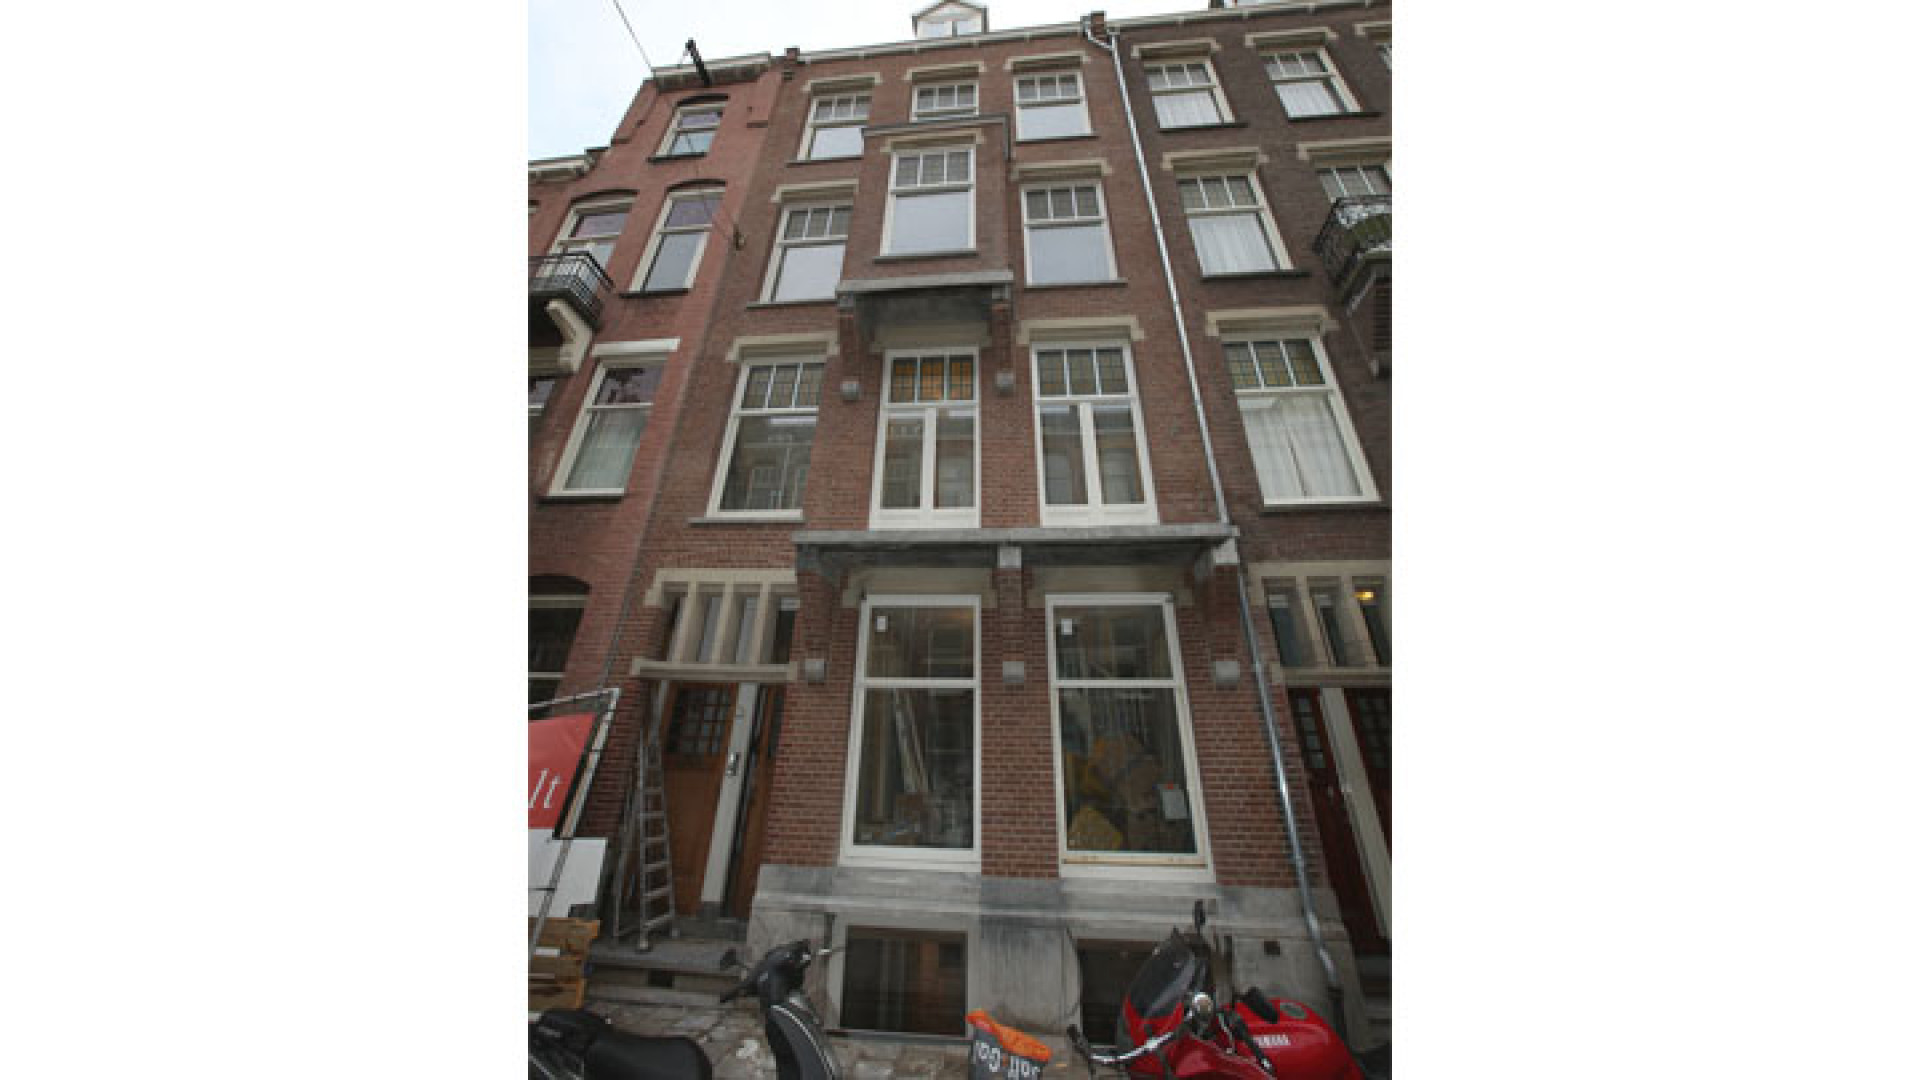 Doutzen Kroes koopt schitterend pand in Amsterdam Oud Zuid. Zie exclusieve foto's 10